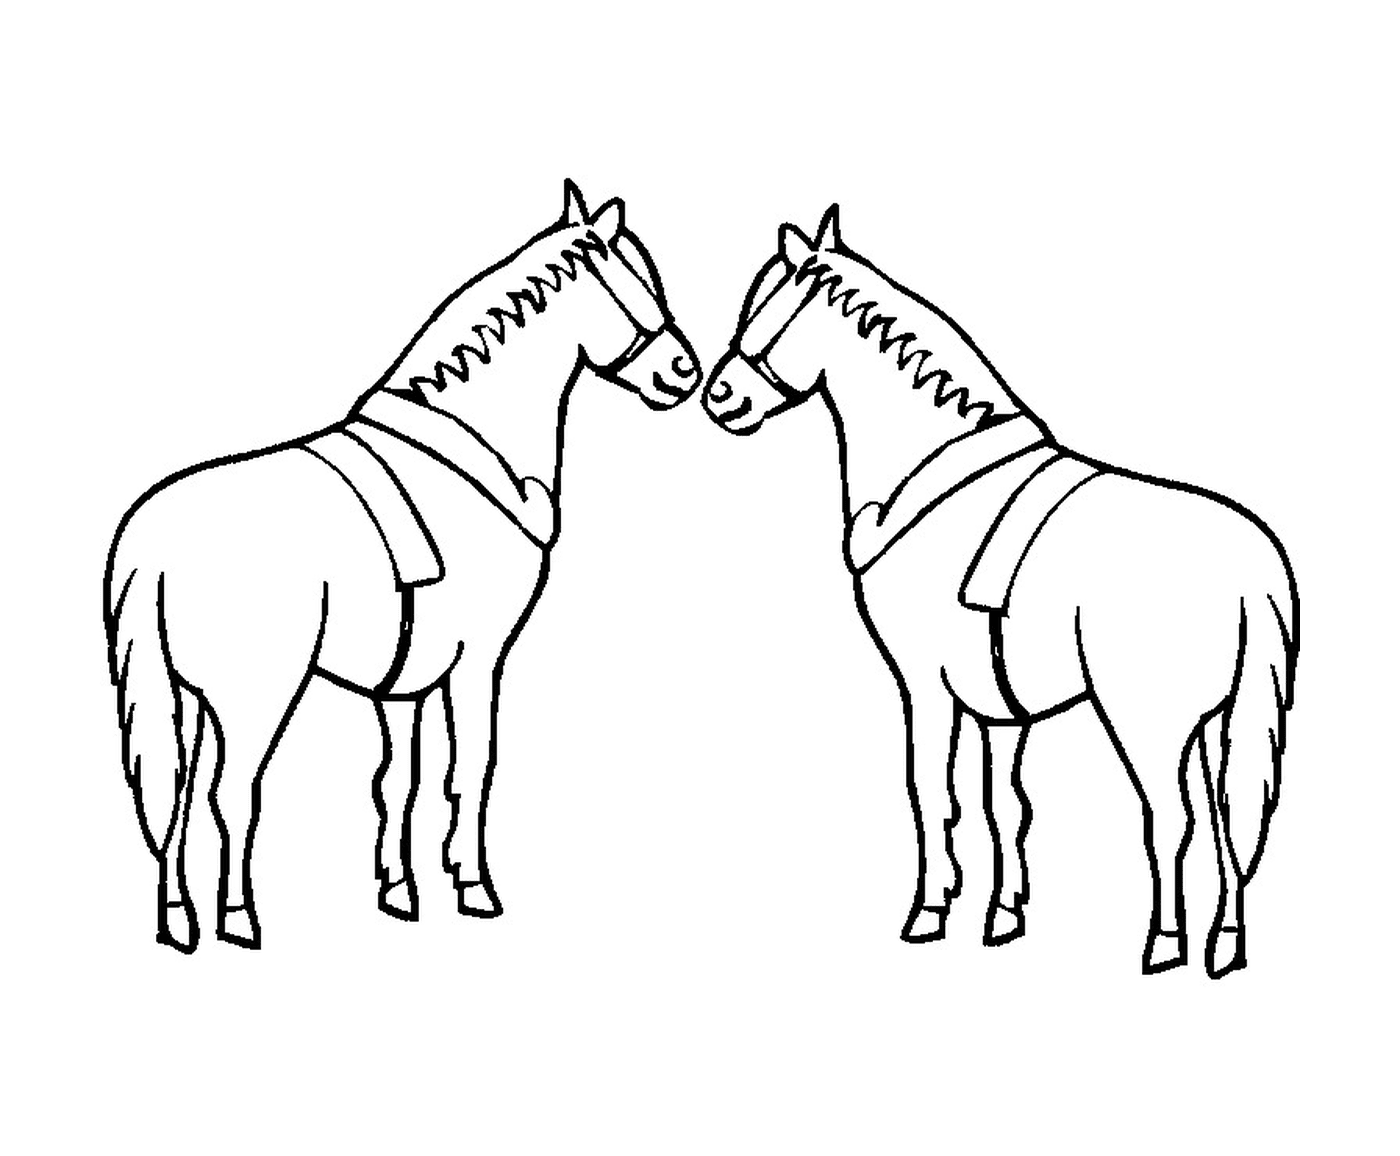  घास में खड़े हुए घोड़े के दो जोड़े 